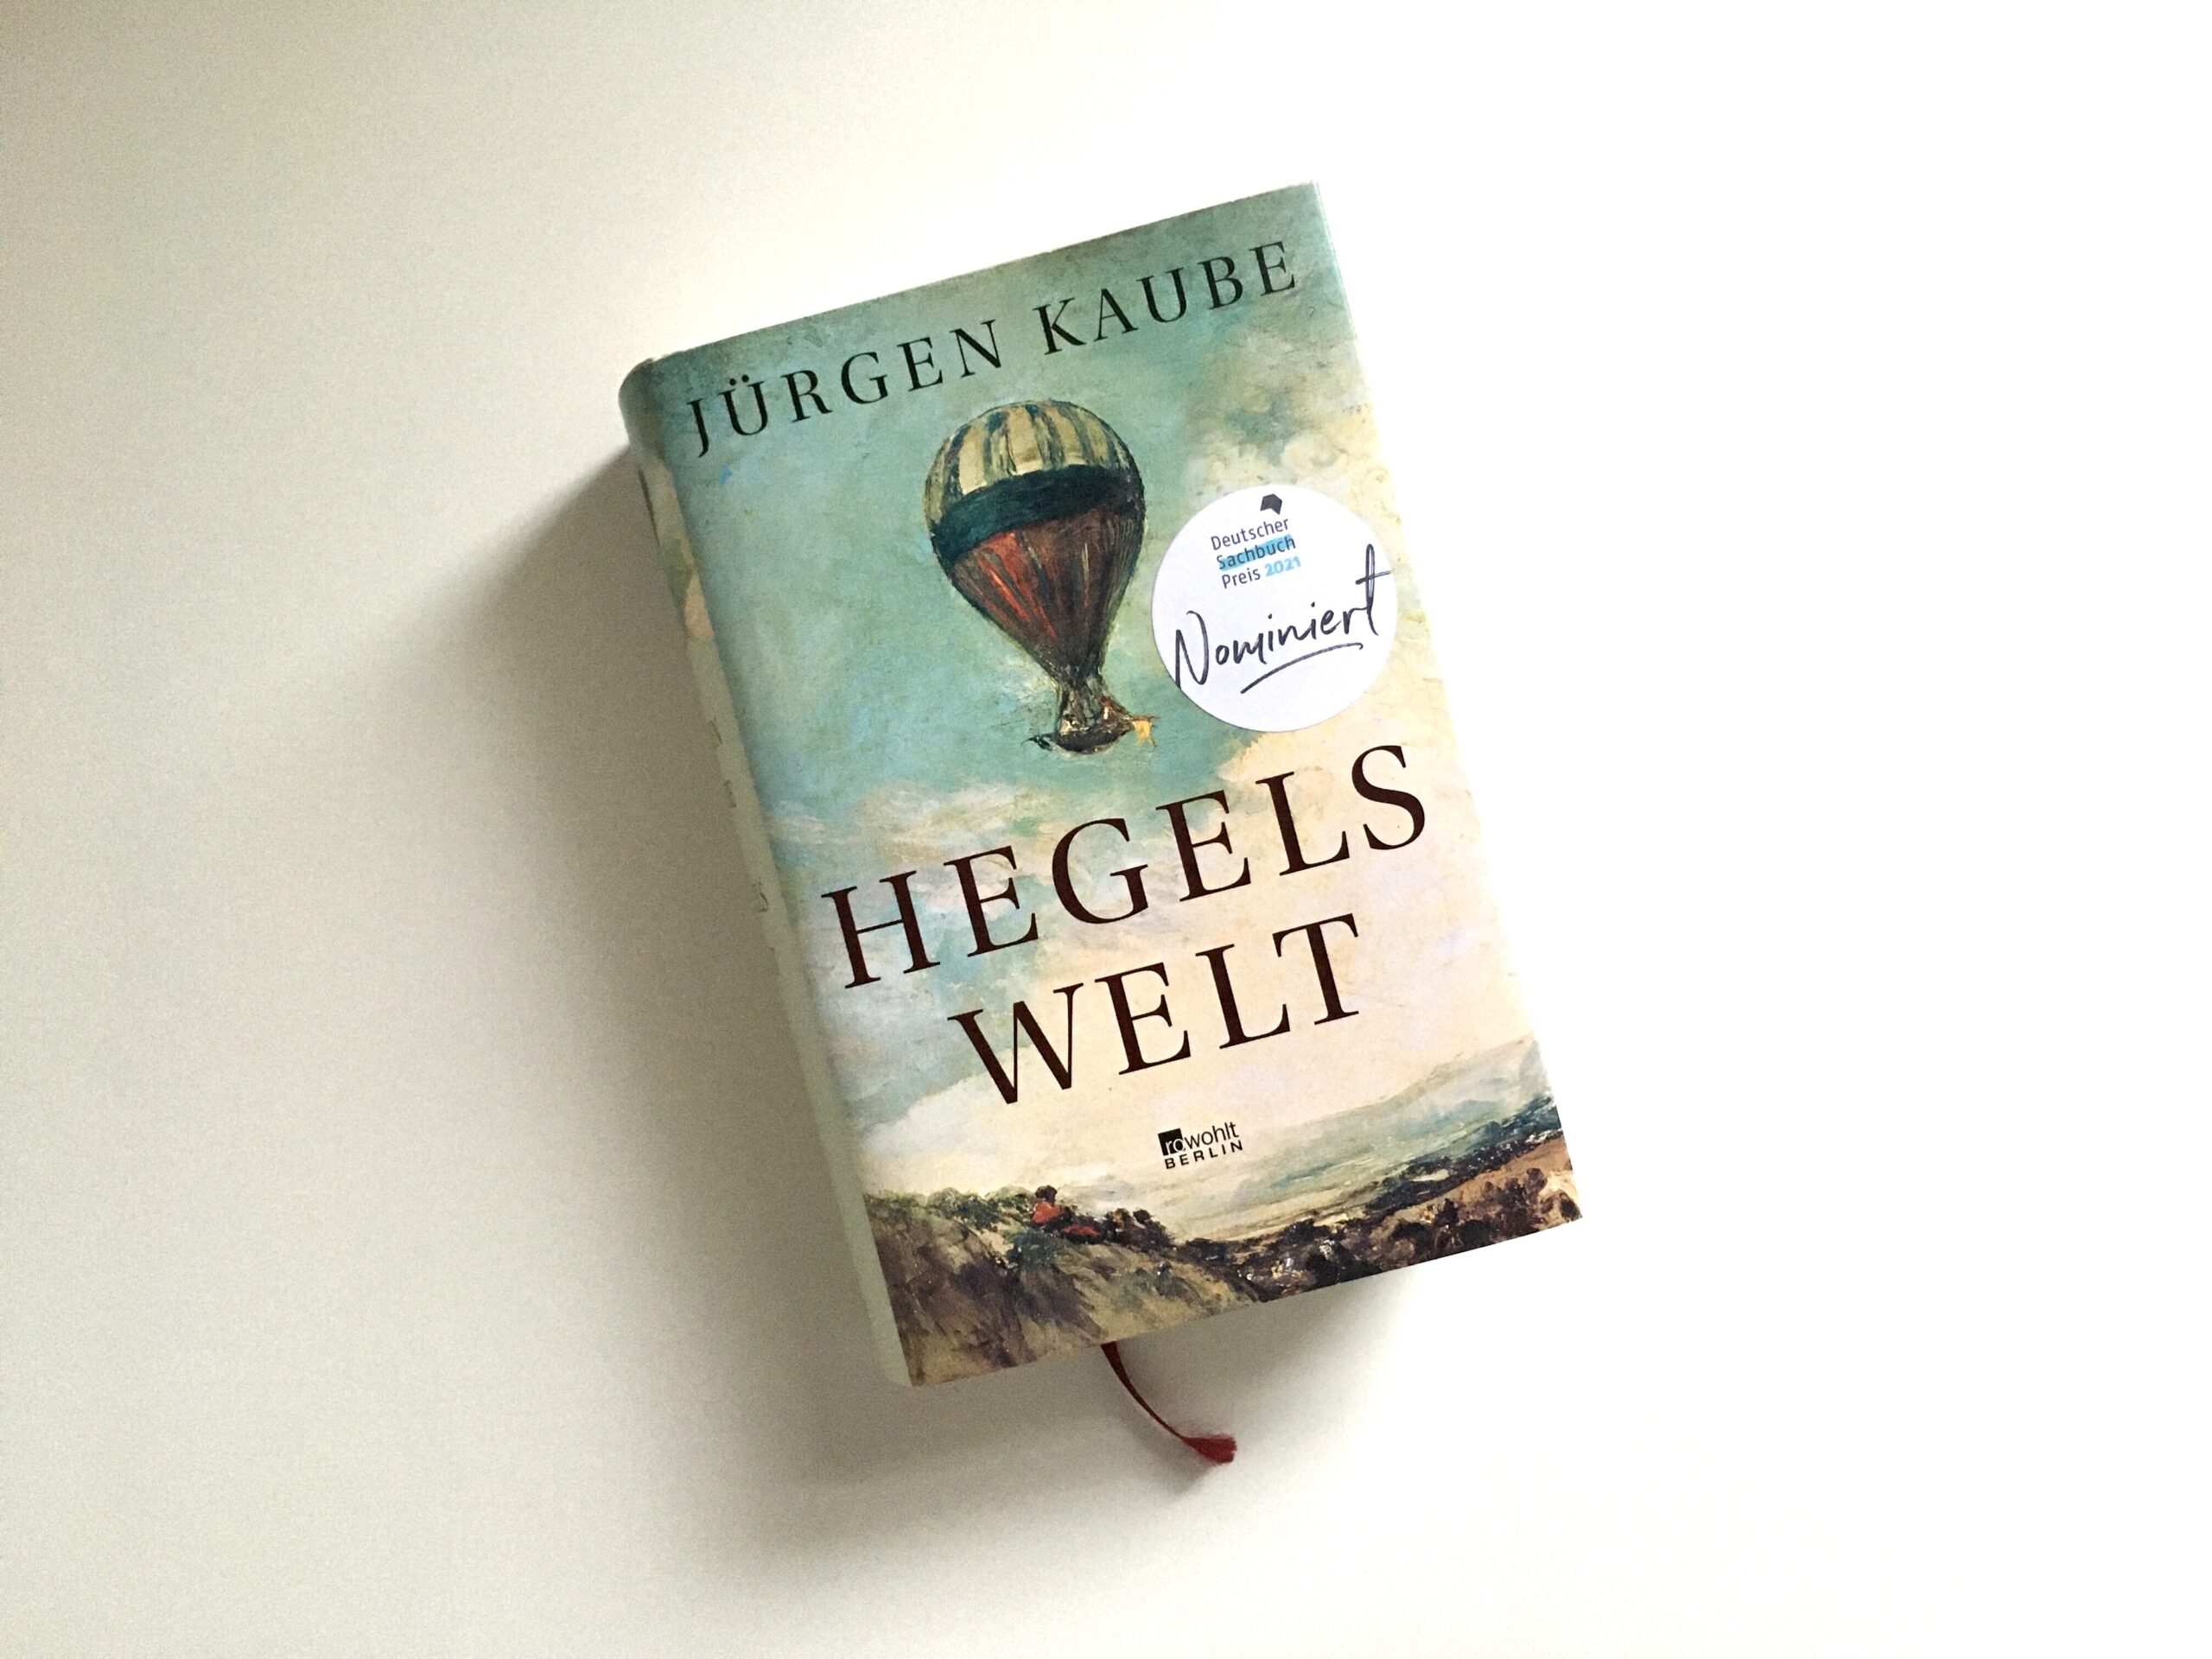 Jürgen Kaube: Hegels Welt